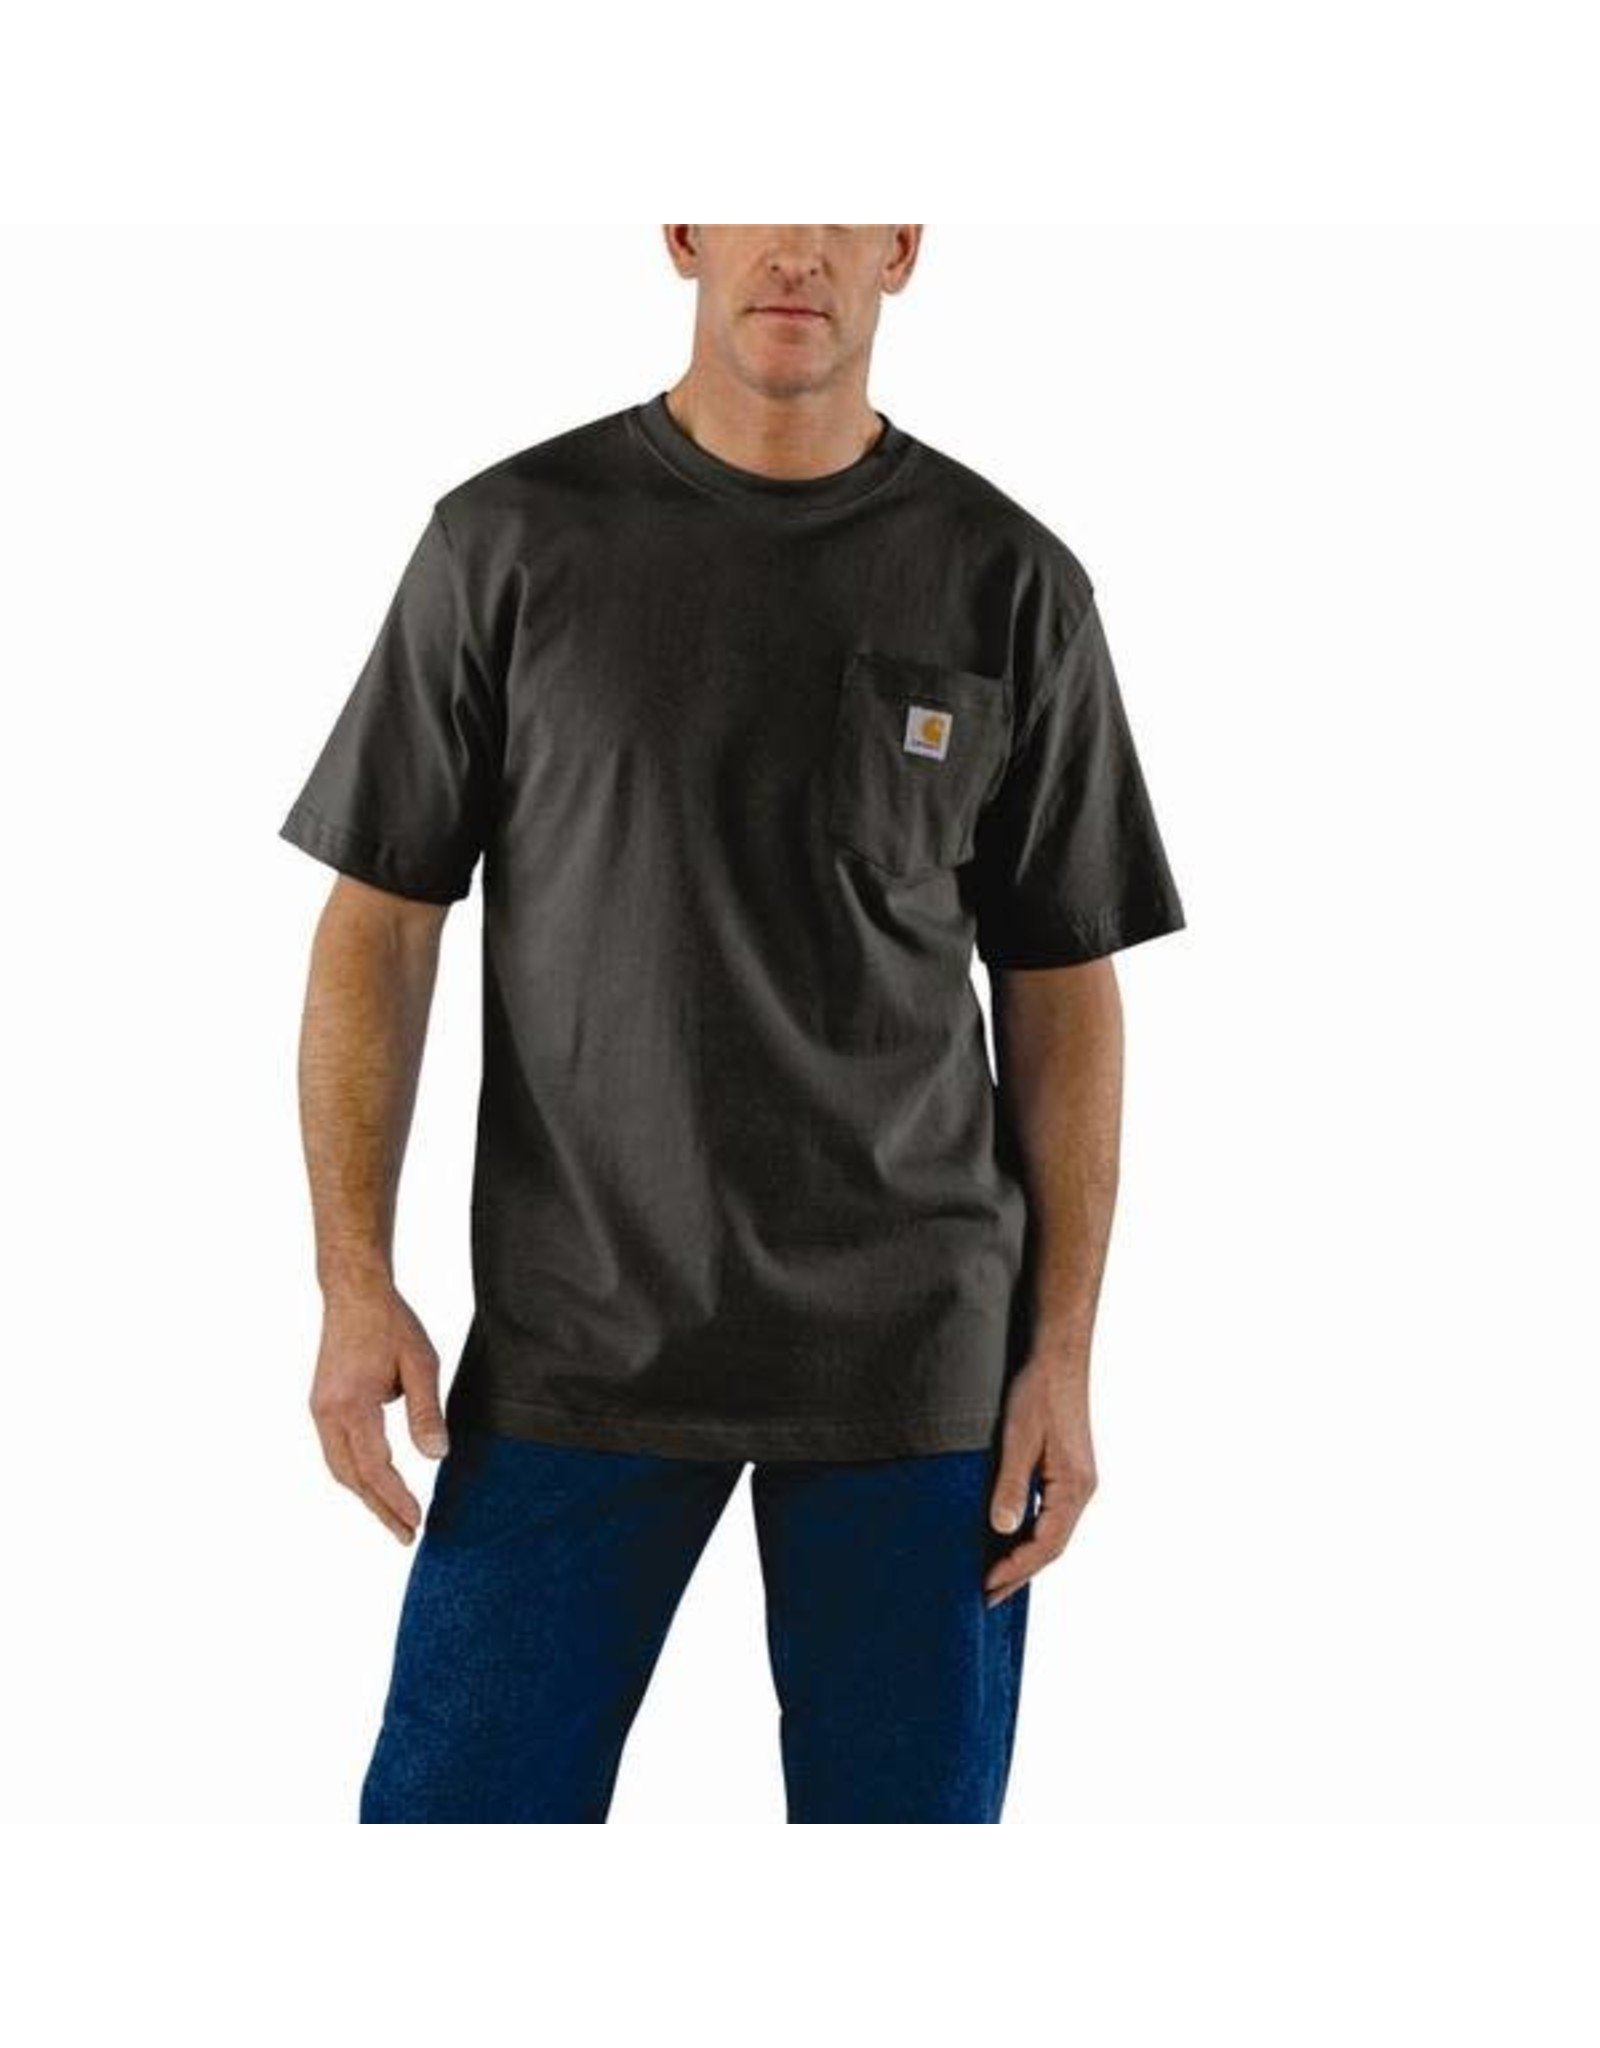 Carhartt Men's K87-306 Peat T-Shirt Sz. SM